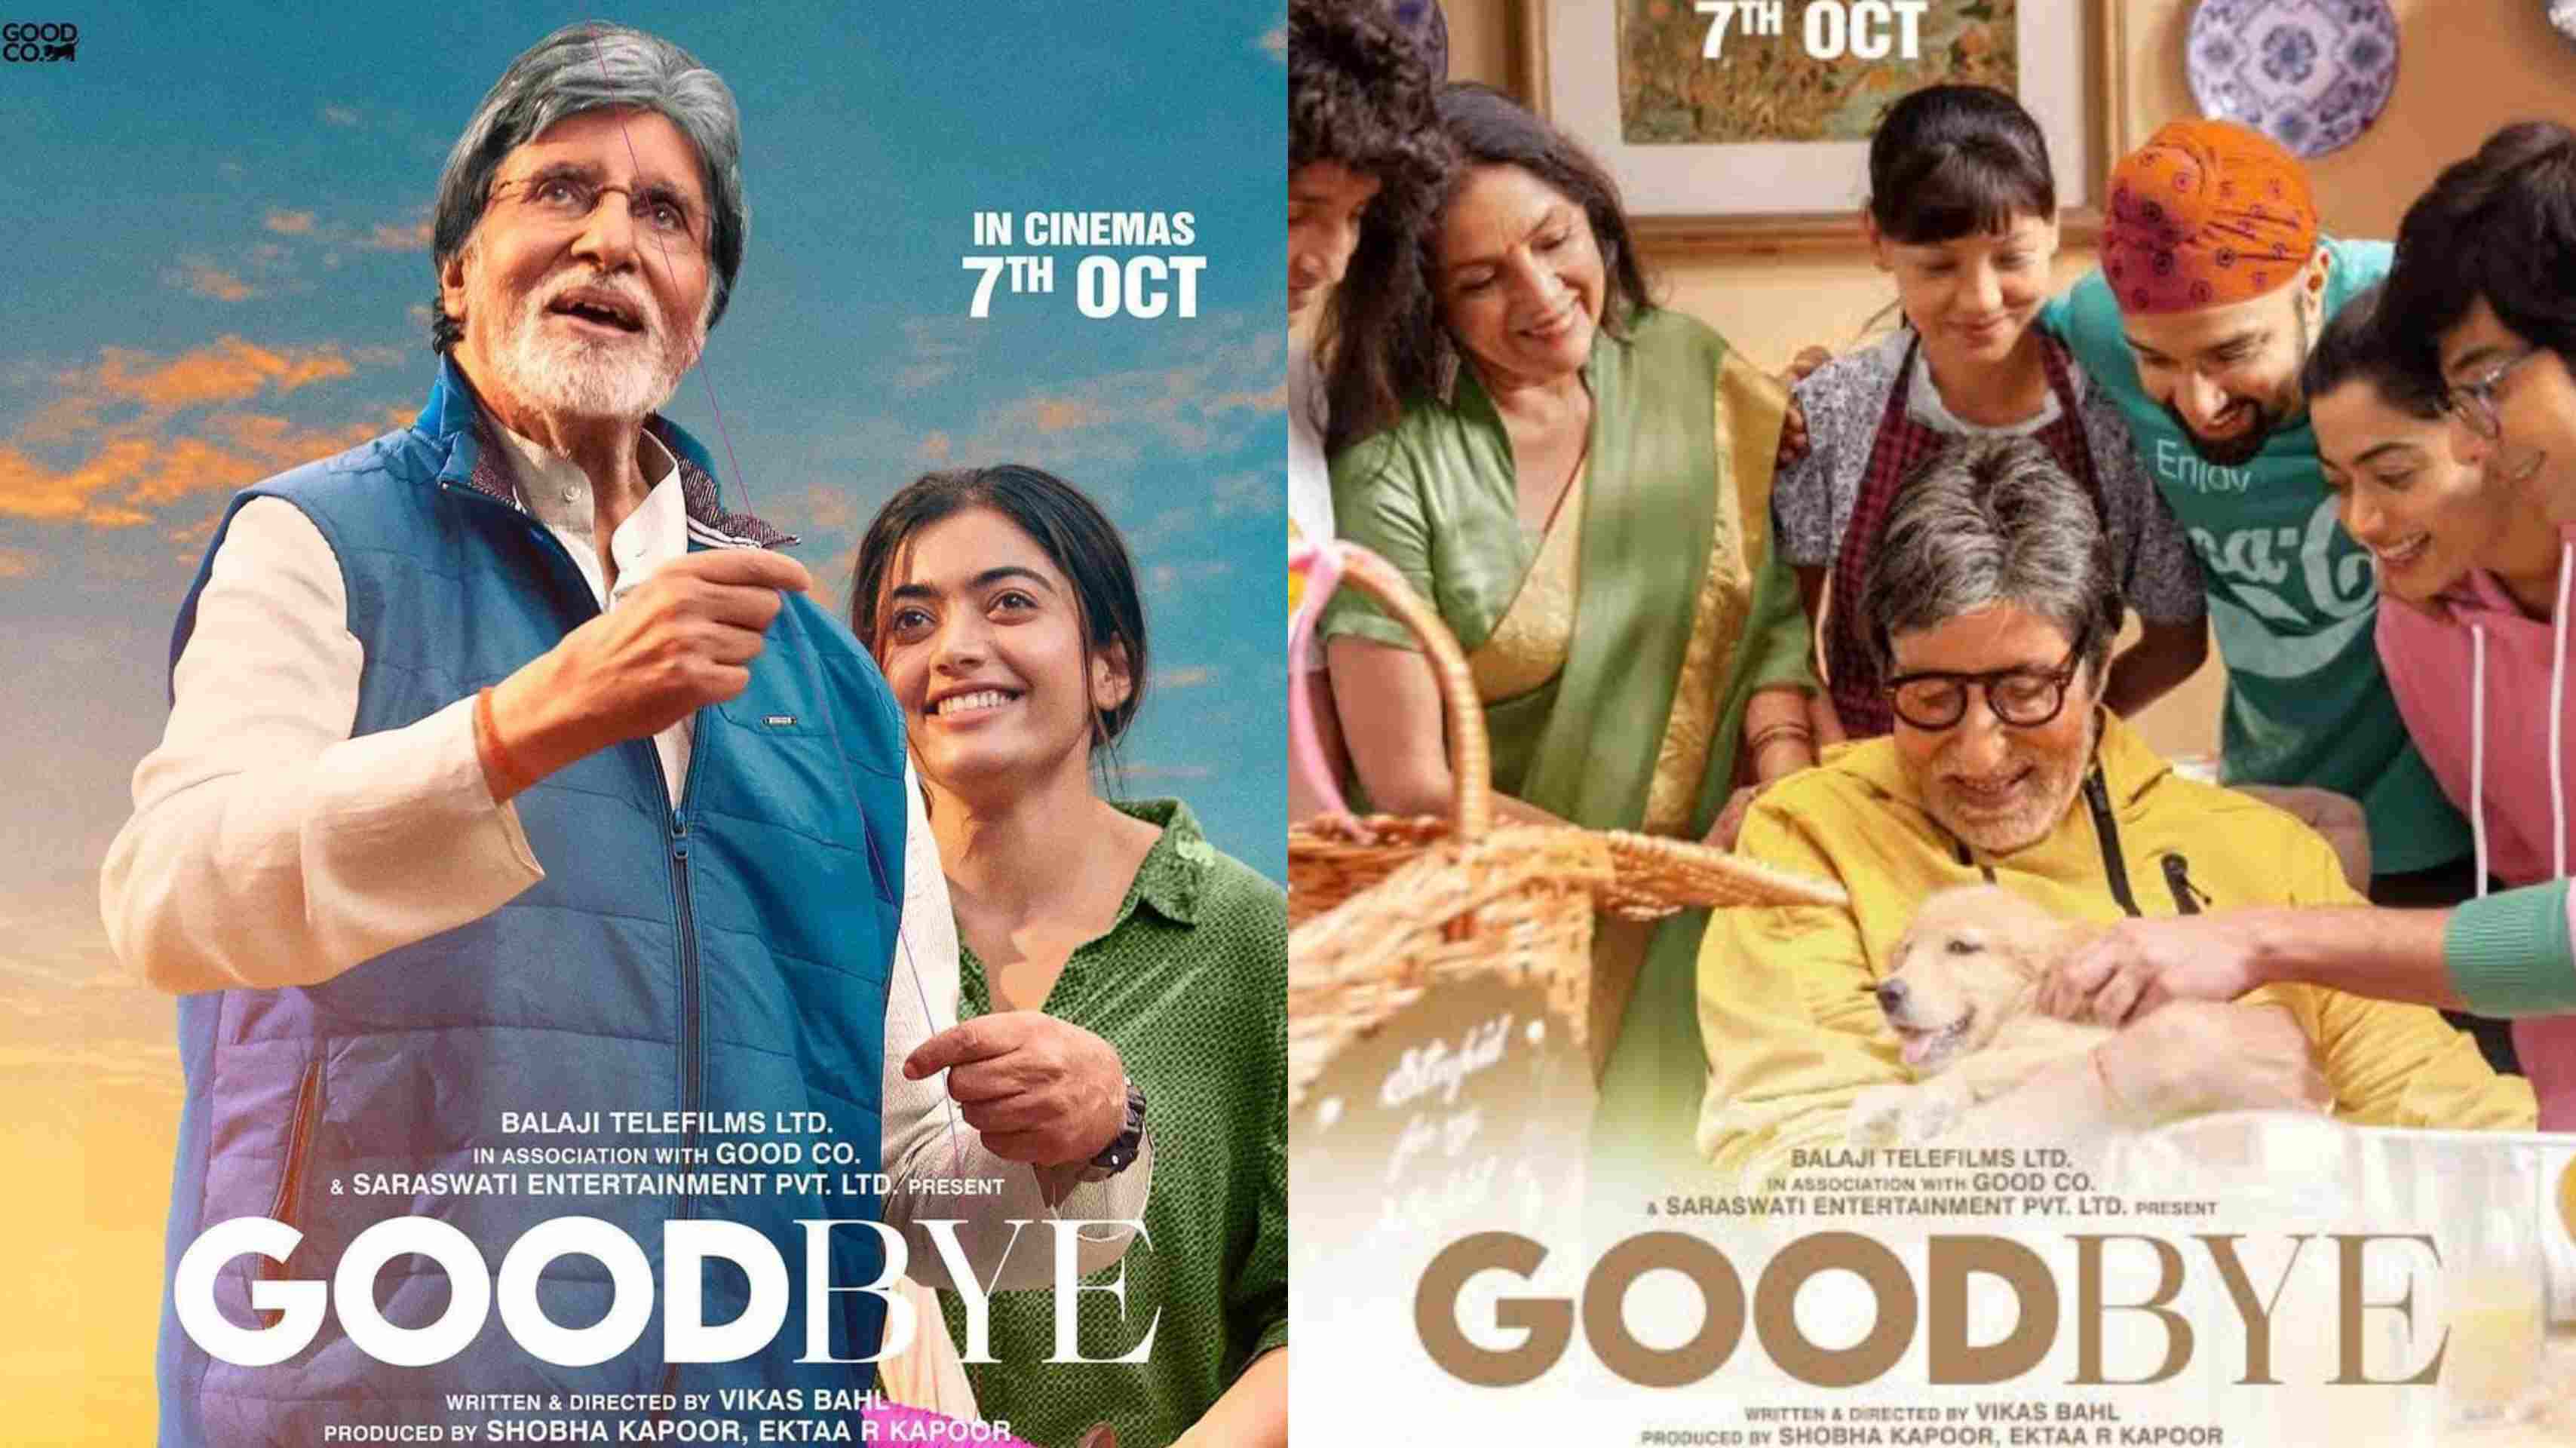 अमिताभ बच्चन की फिल्म गुड बाय का निराशाजनक प्रदर्शन जारी